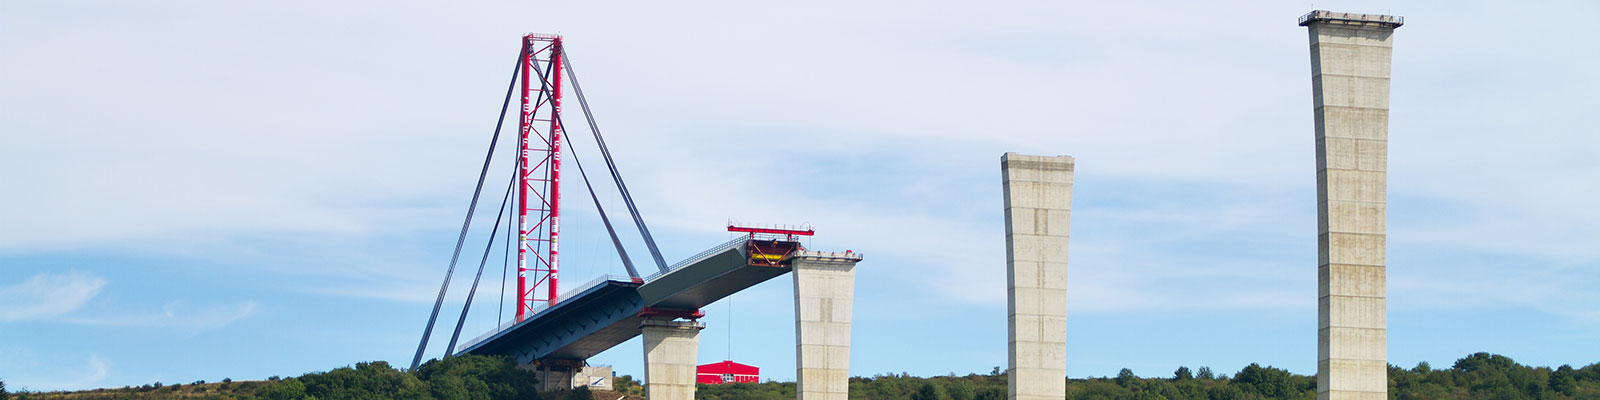 Bridge construction symbolizes public procurement